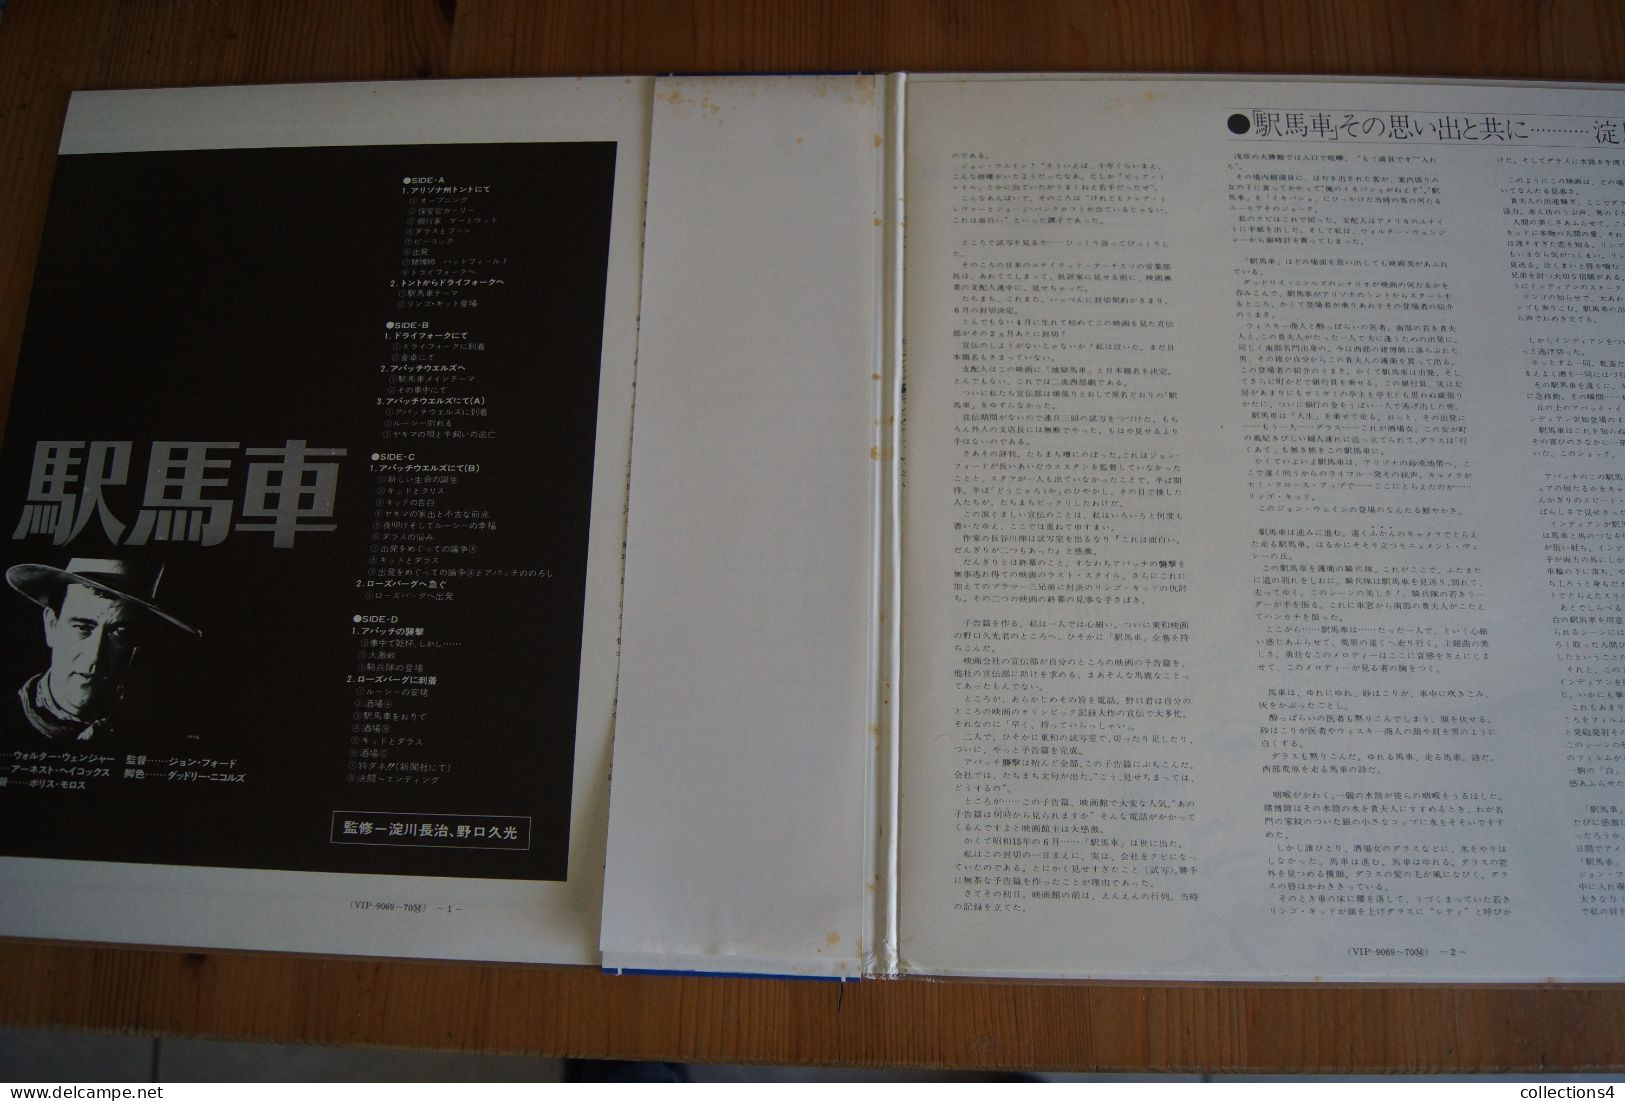 STAGECOACH JOHN FORD JOHN WAYNE RARE DOUBLE LP JAPONAIS DU FILM   197? - Musique De Films